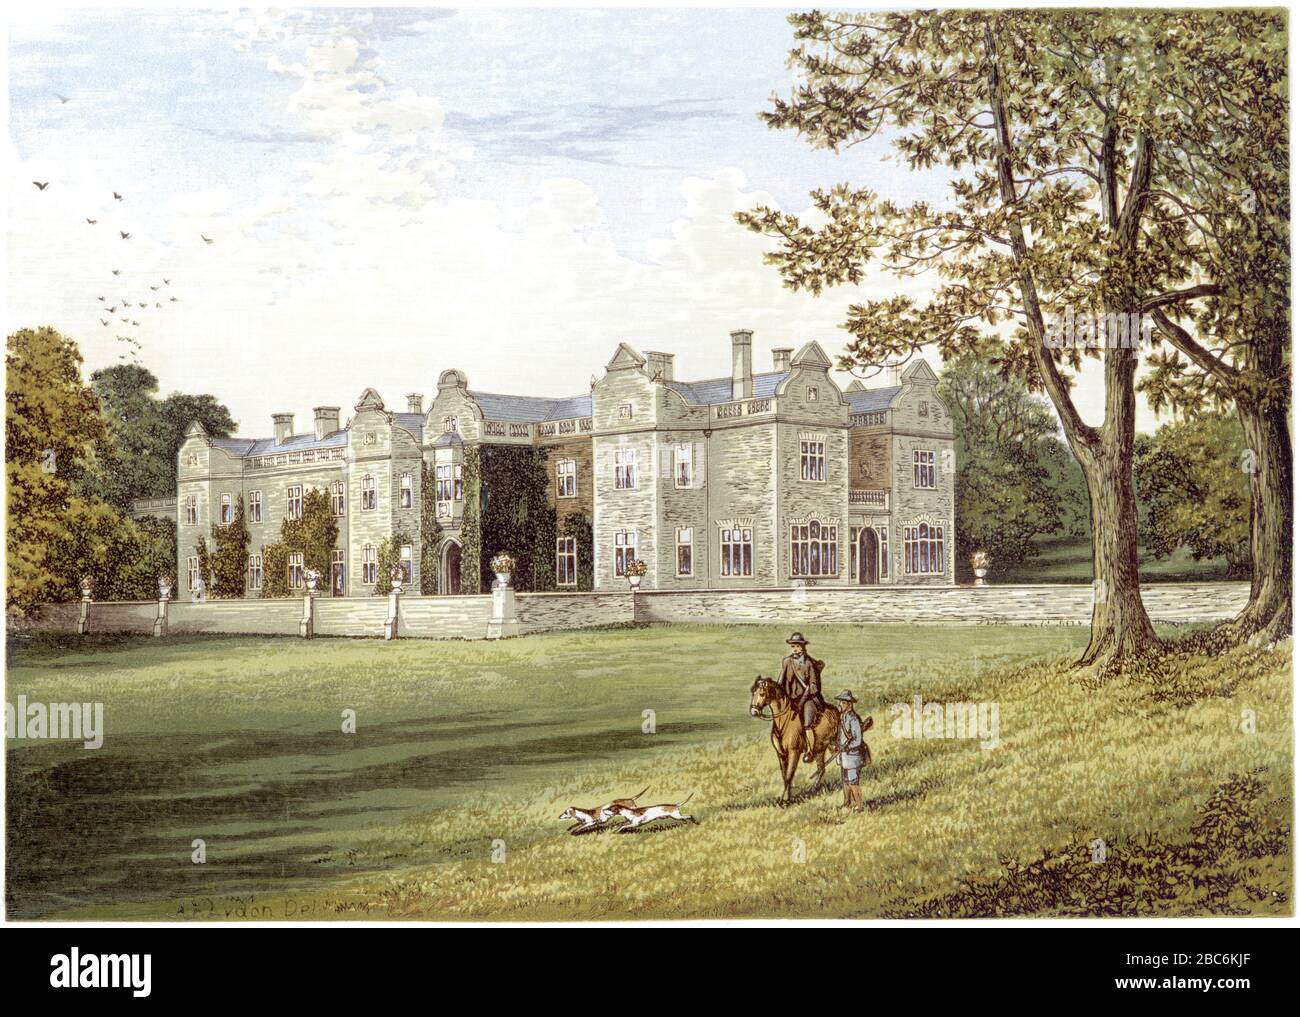 Illustration colorée de Brantingham Thorpe Hall, Yorkshire UK, numérisée à haute résolution à partir d'un livre imprimé en 1870. Je pensais libre de droits d'auteur. Banque D'Images